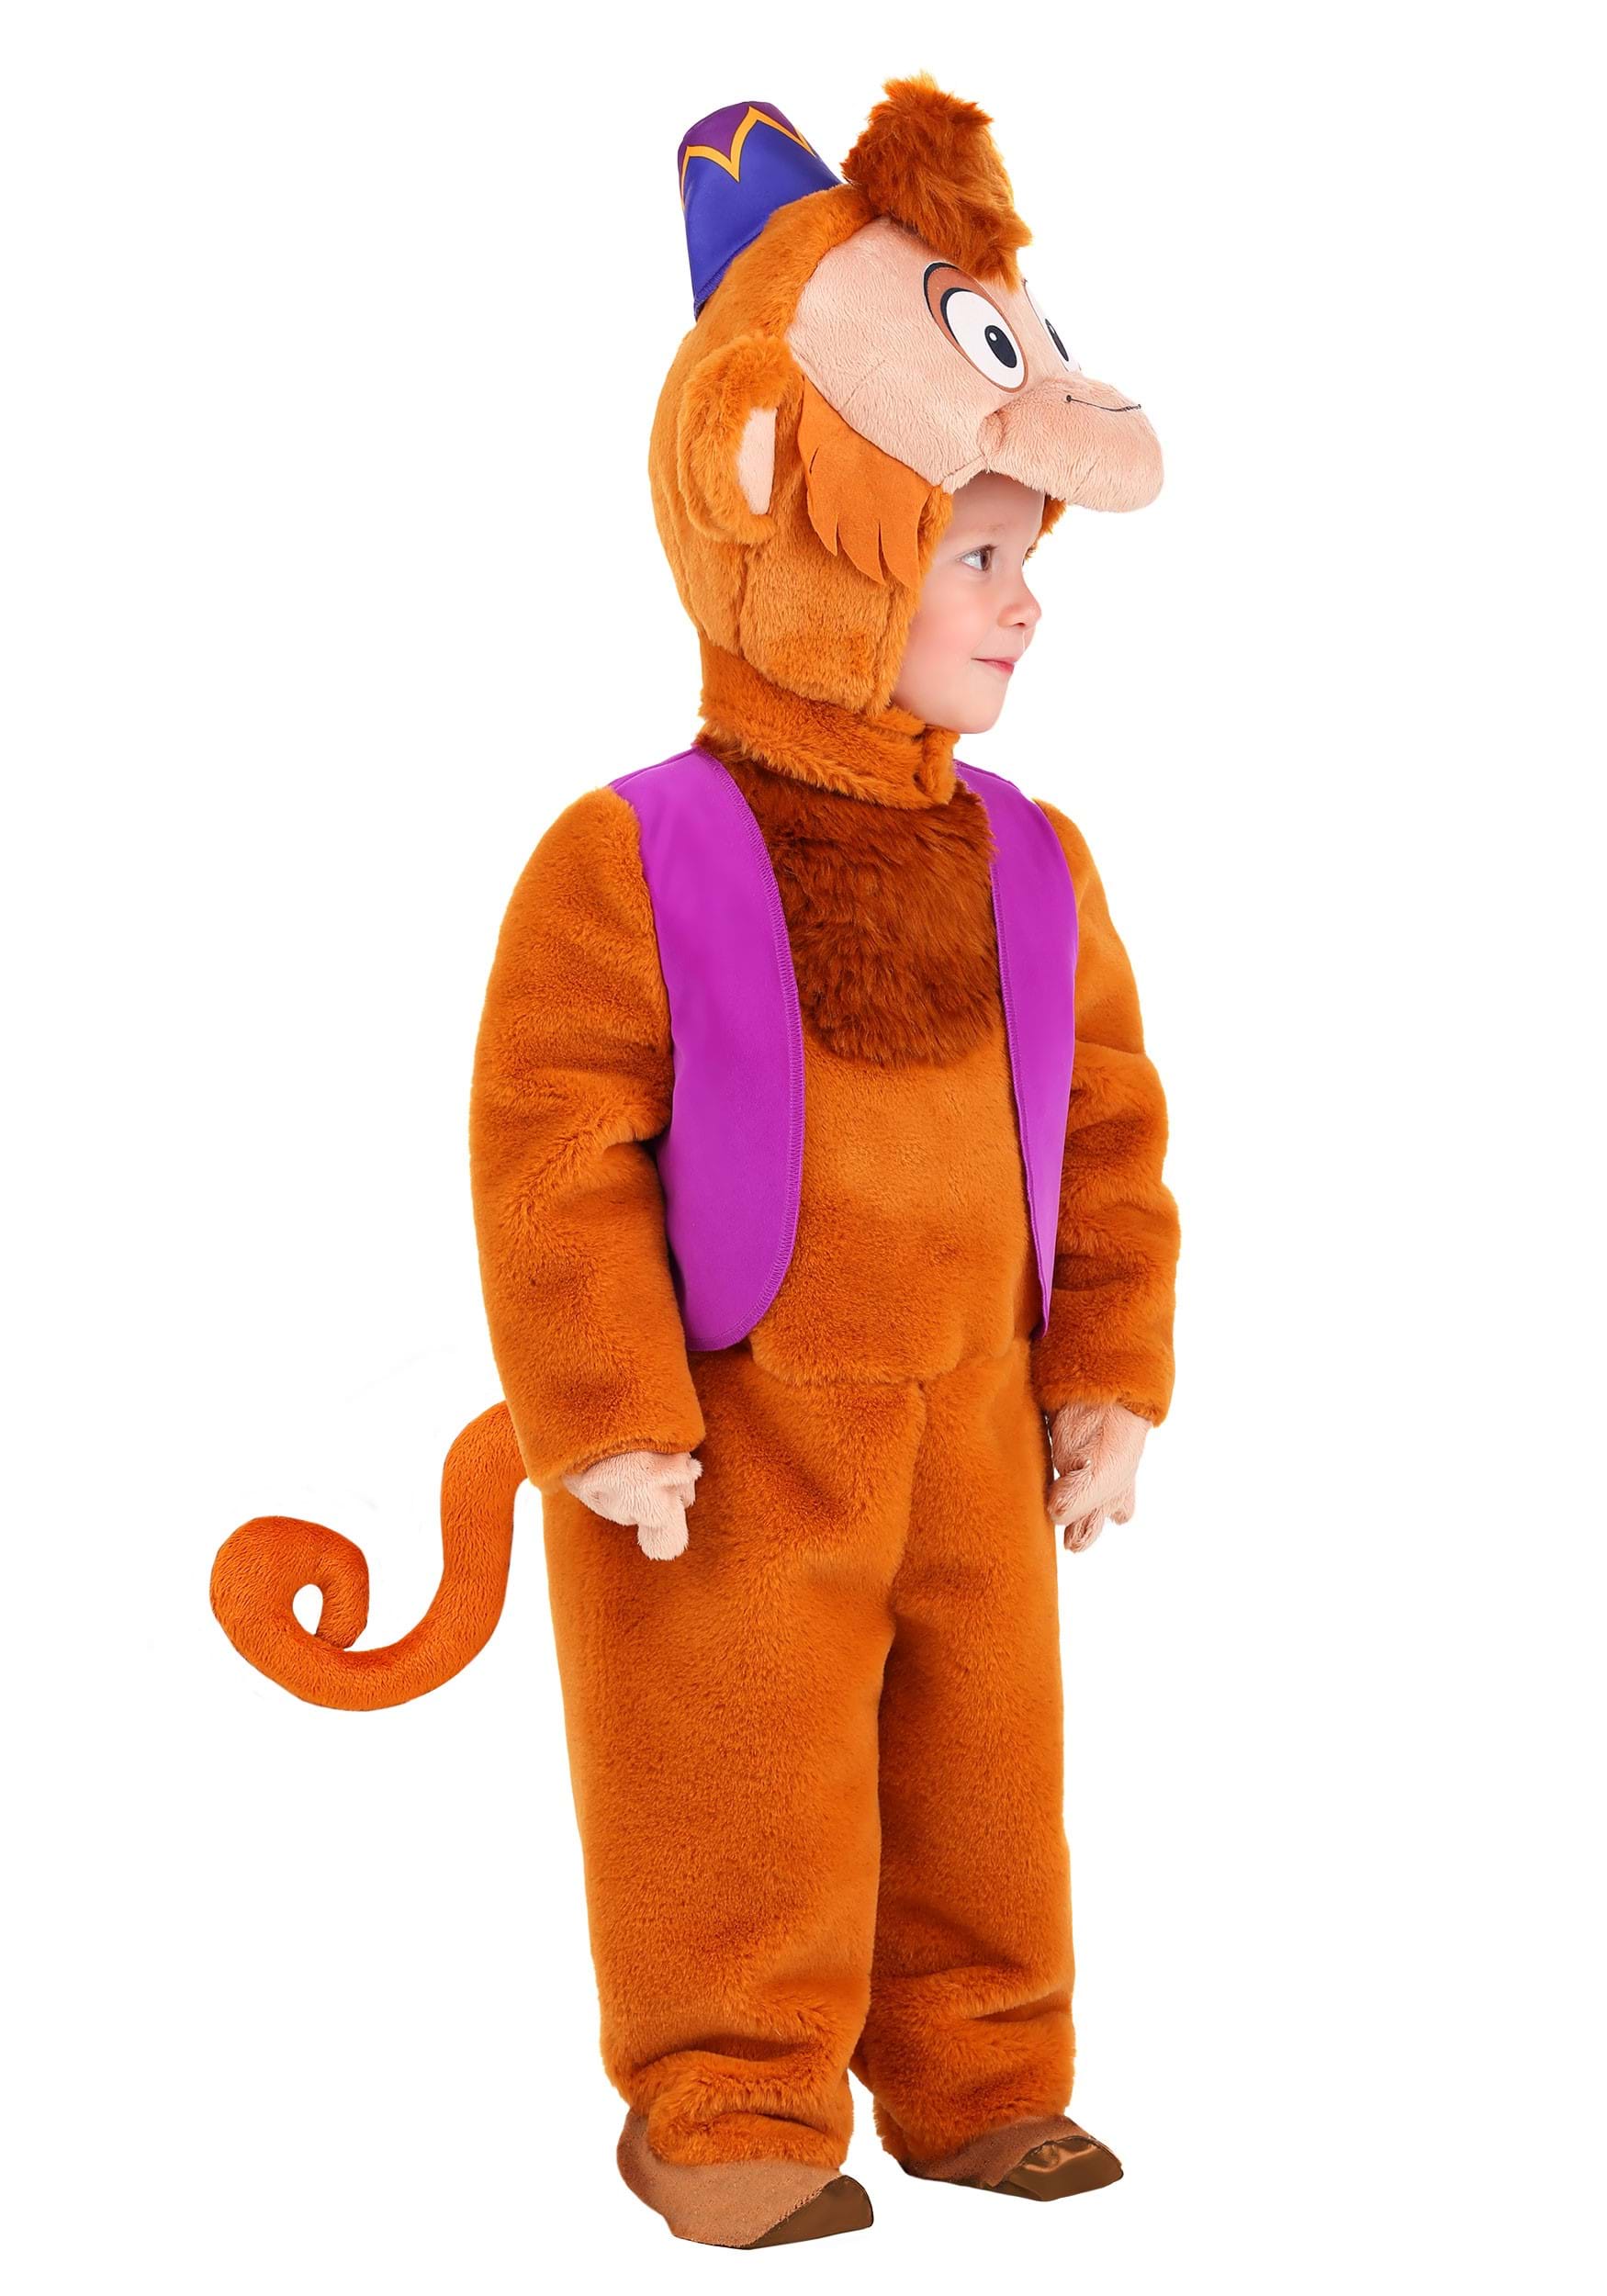 aladdin costume for kids